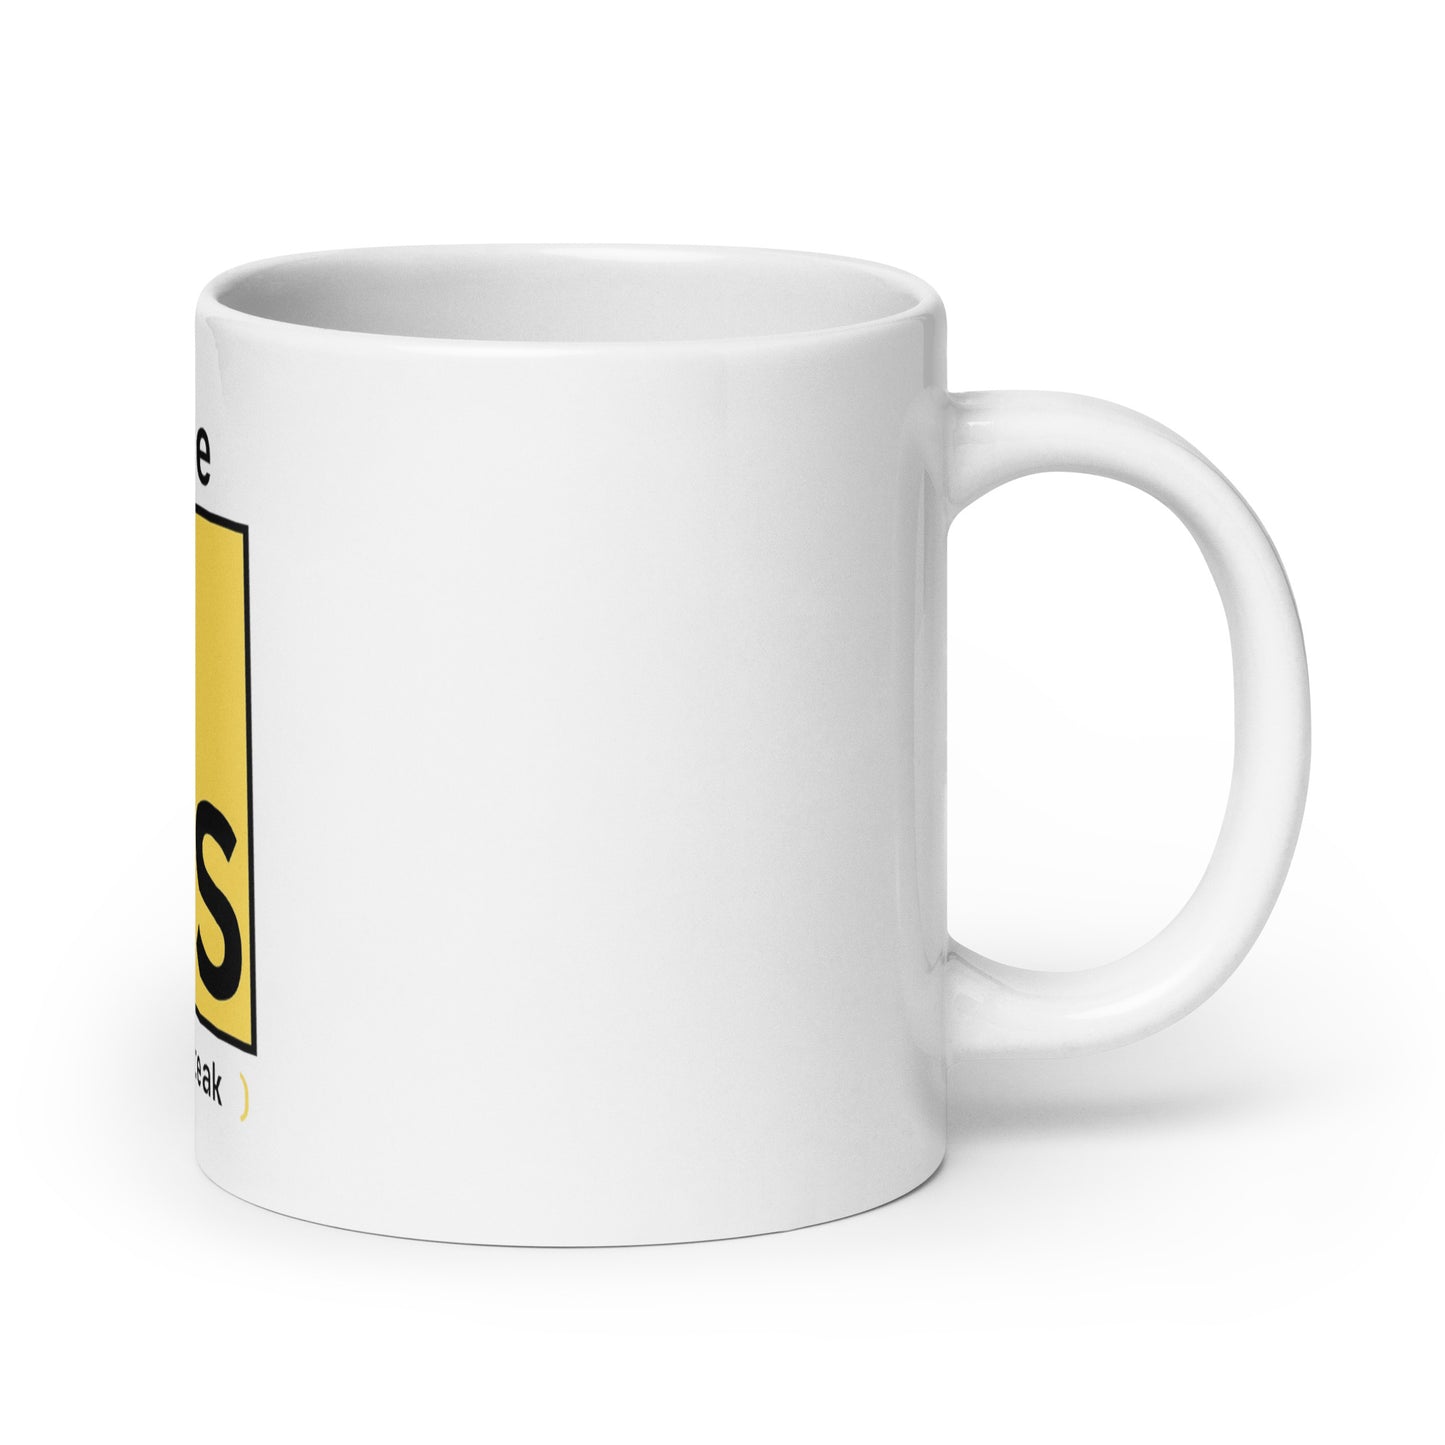 I Love JS mug